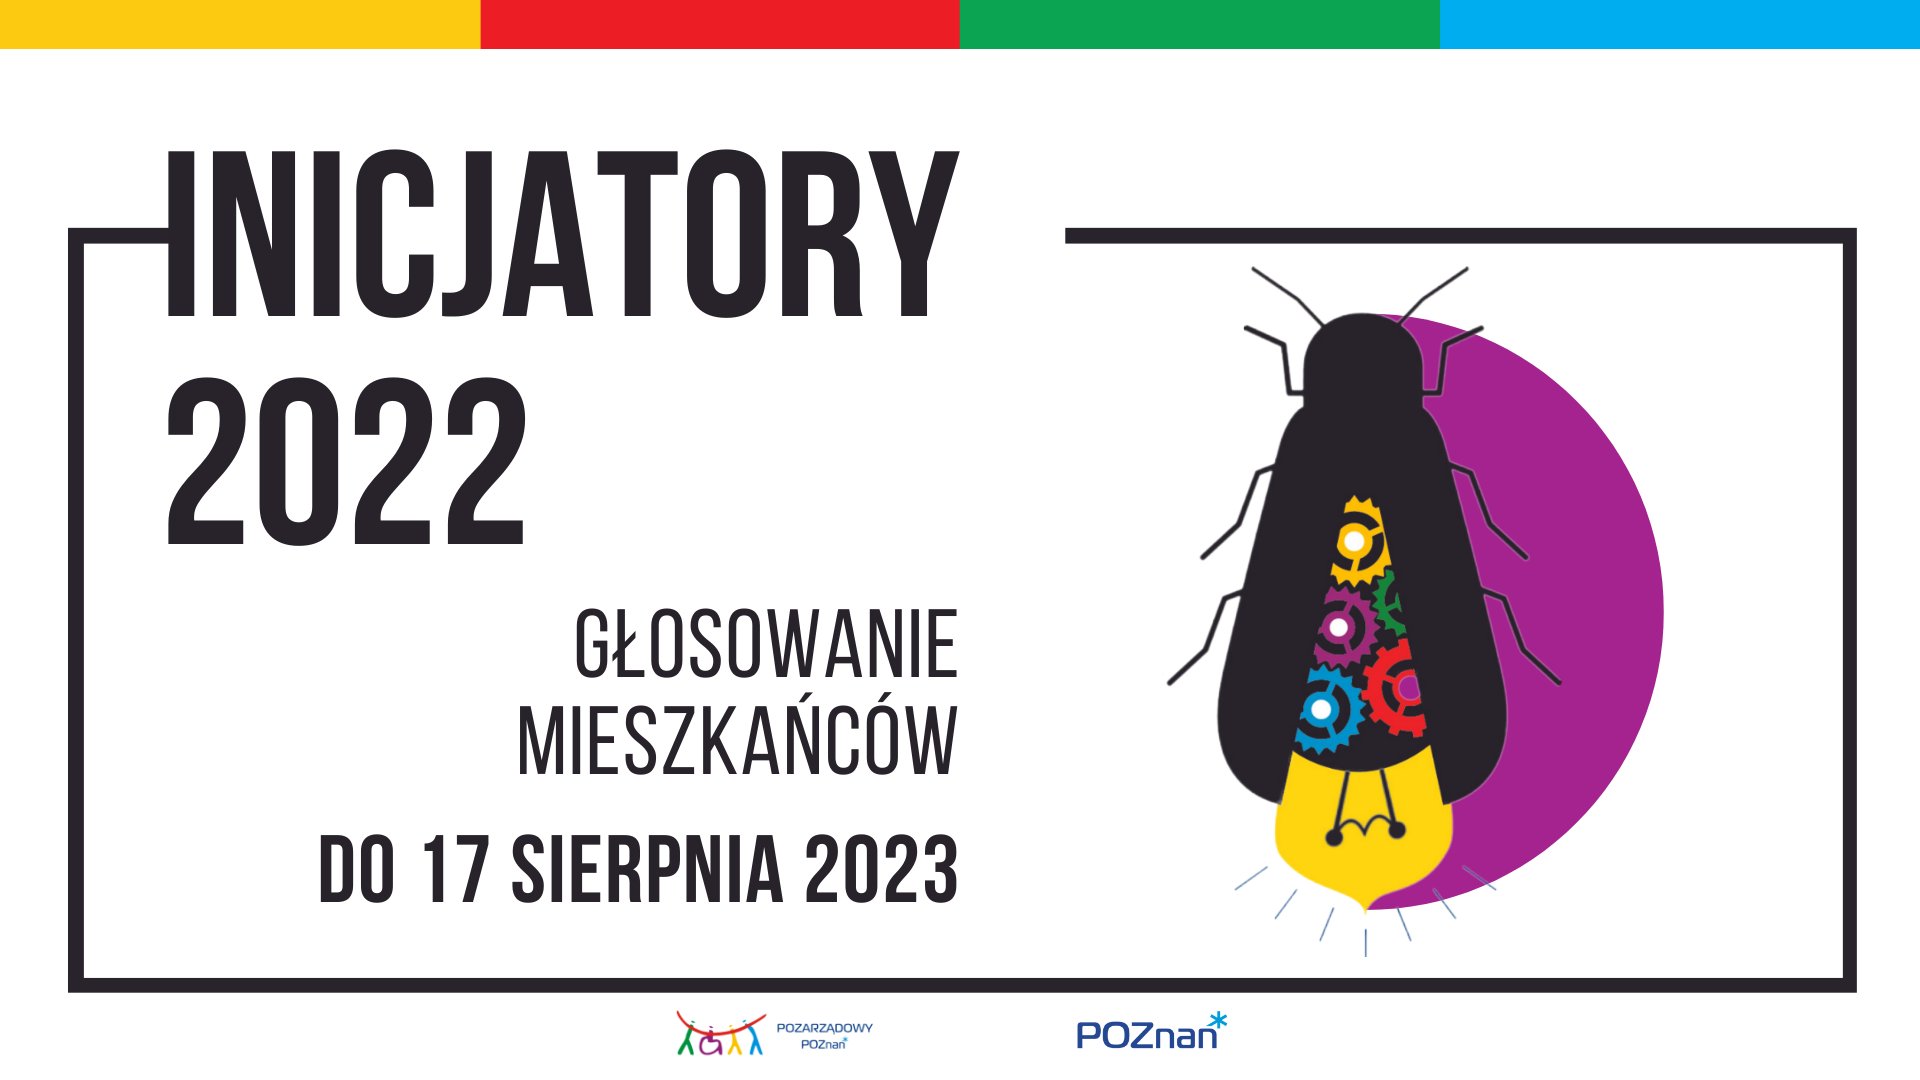 Rozpoczęło się głosowanie mieszkanek i mieszkańców w konkursie Inicjatory 2022.